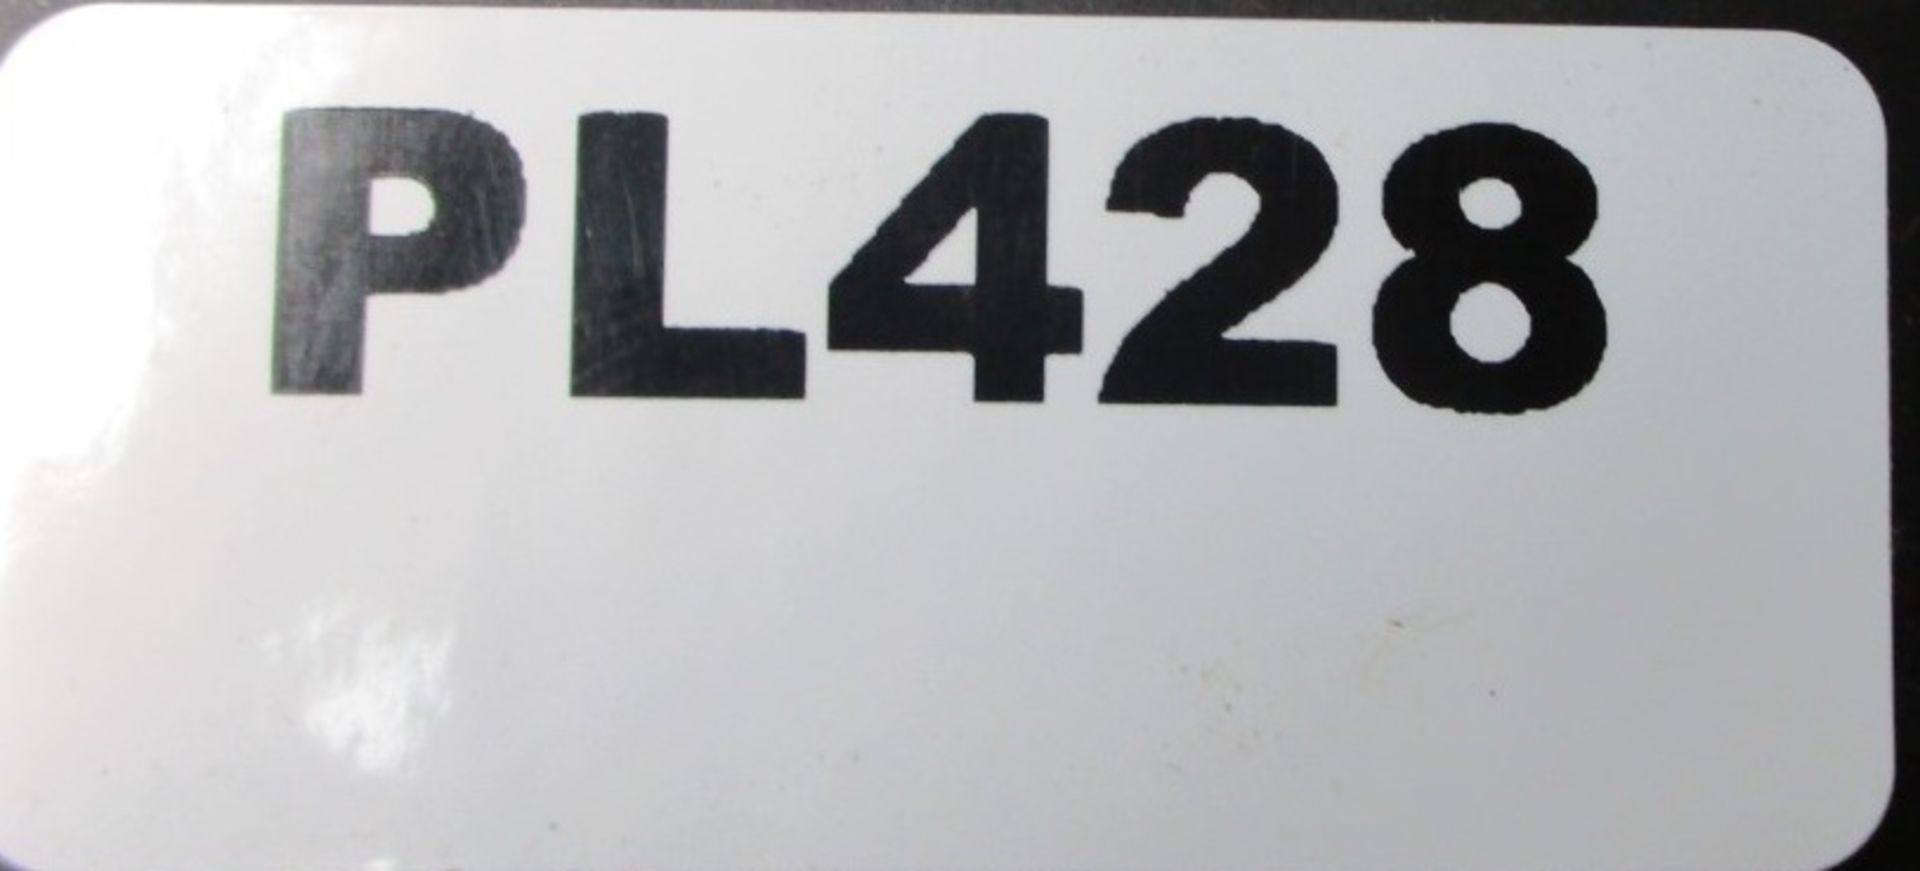 12 x Eurospec Safety Door Handles Plate Handles - Brand New Stock - Product Code: LIP9001SAA - CL538 - Image 5 of 5